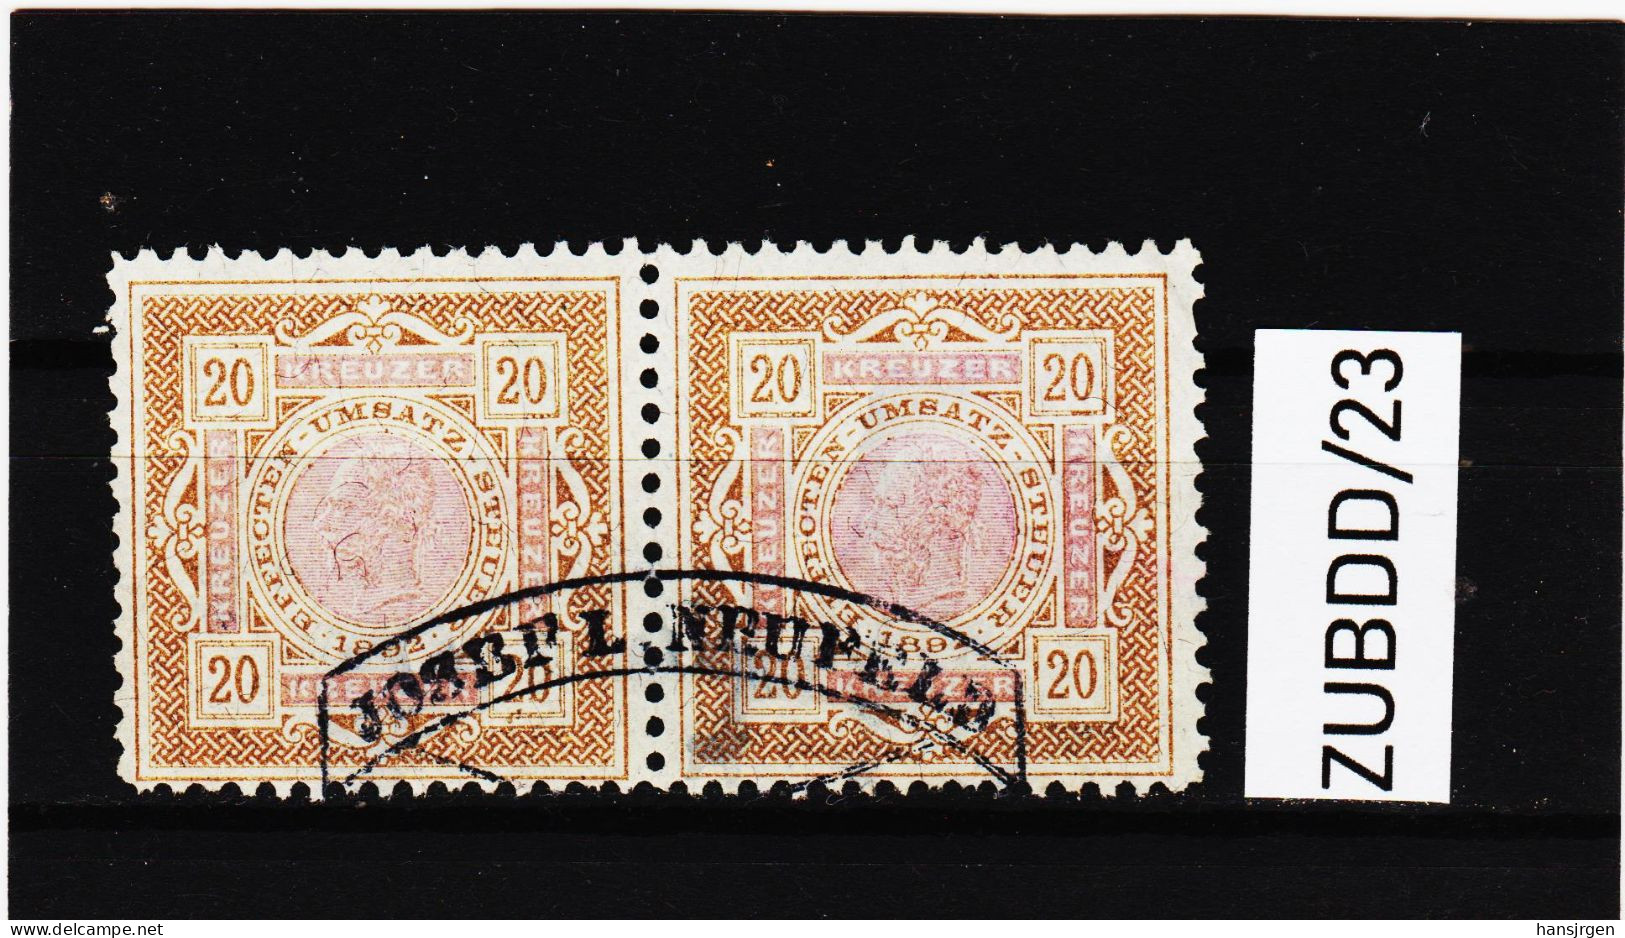 ZUBDD/23 STEMPELMARKEN FISKALMARKEN EFECTEN-UMSATZSTEUER 1898 20 HELLER Im Paar Gestempelt SIEHE ABBILDUNG - Revenue Stamps